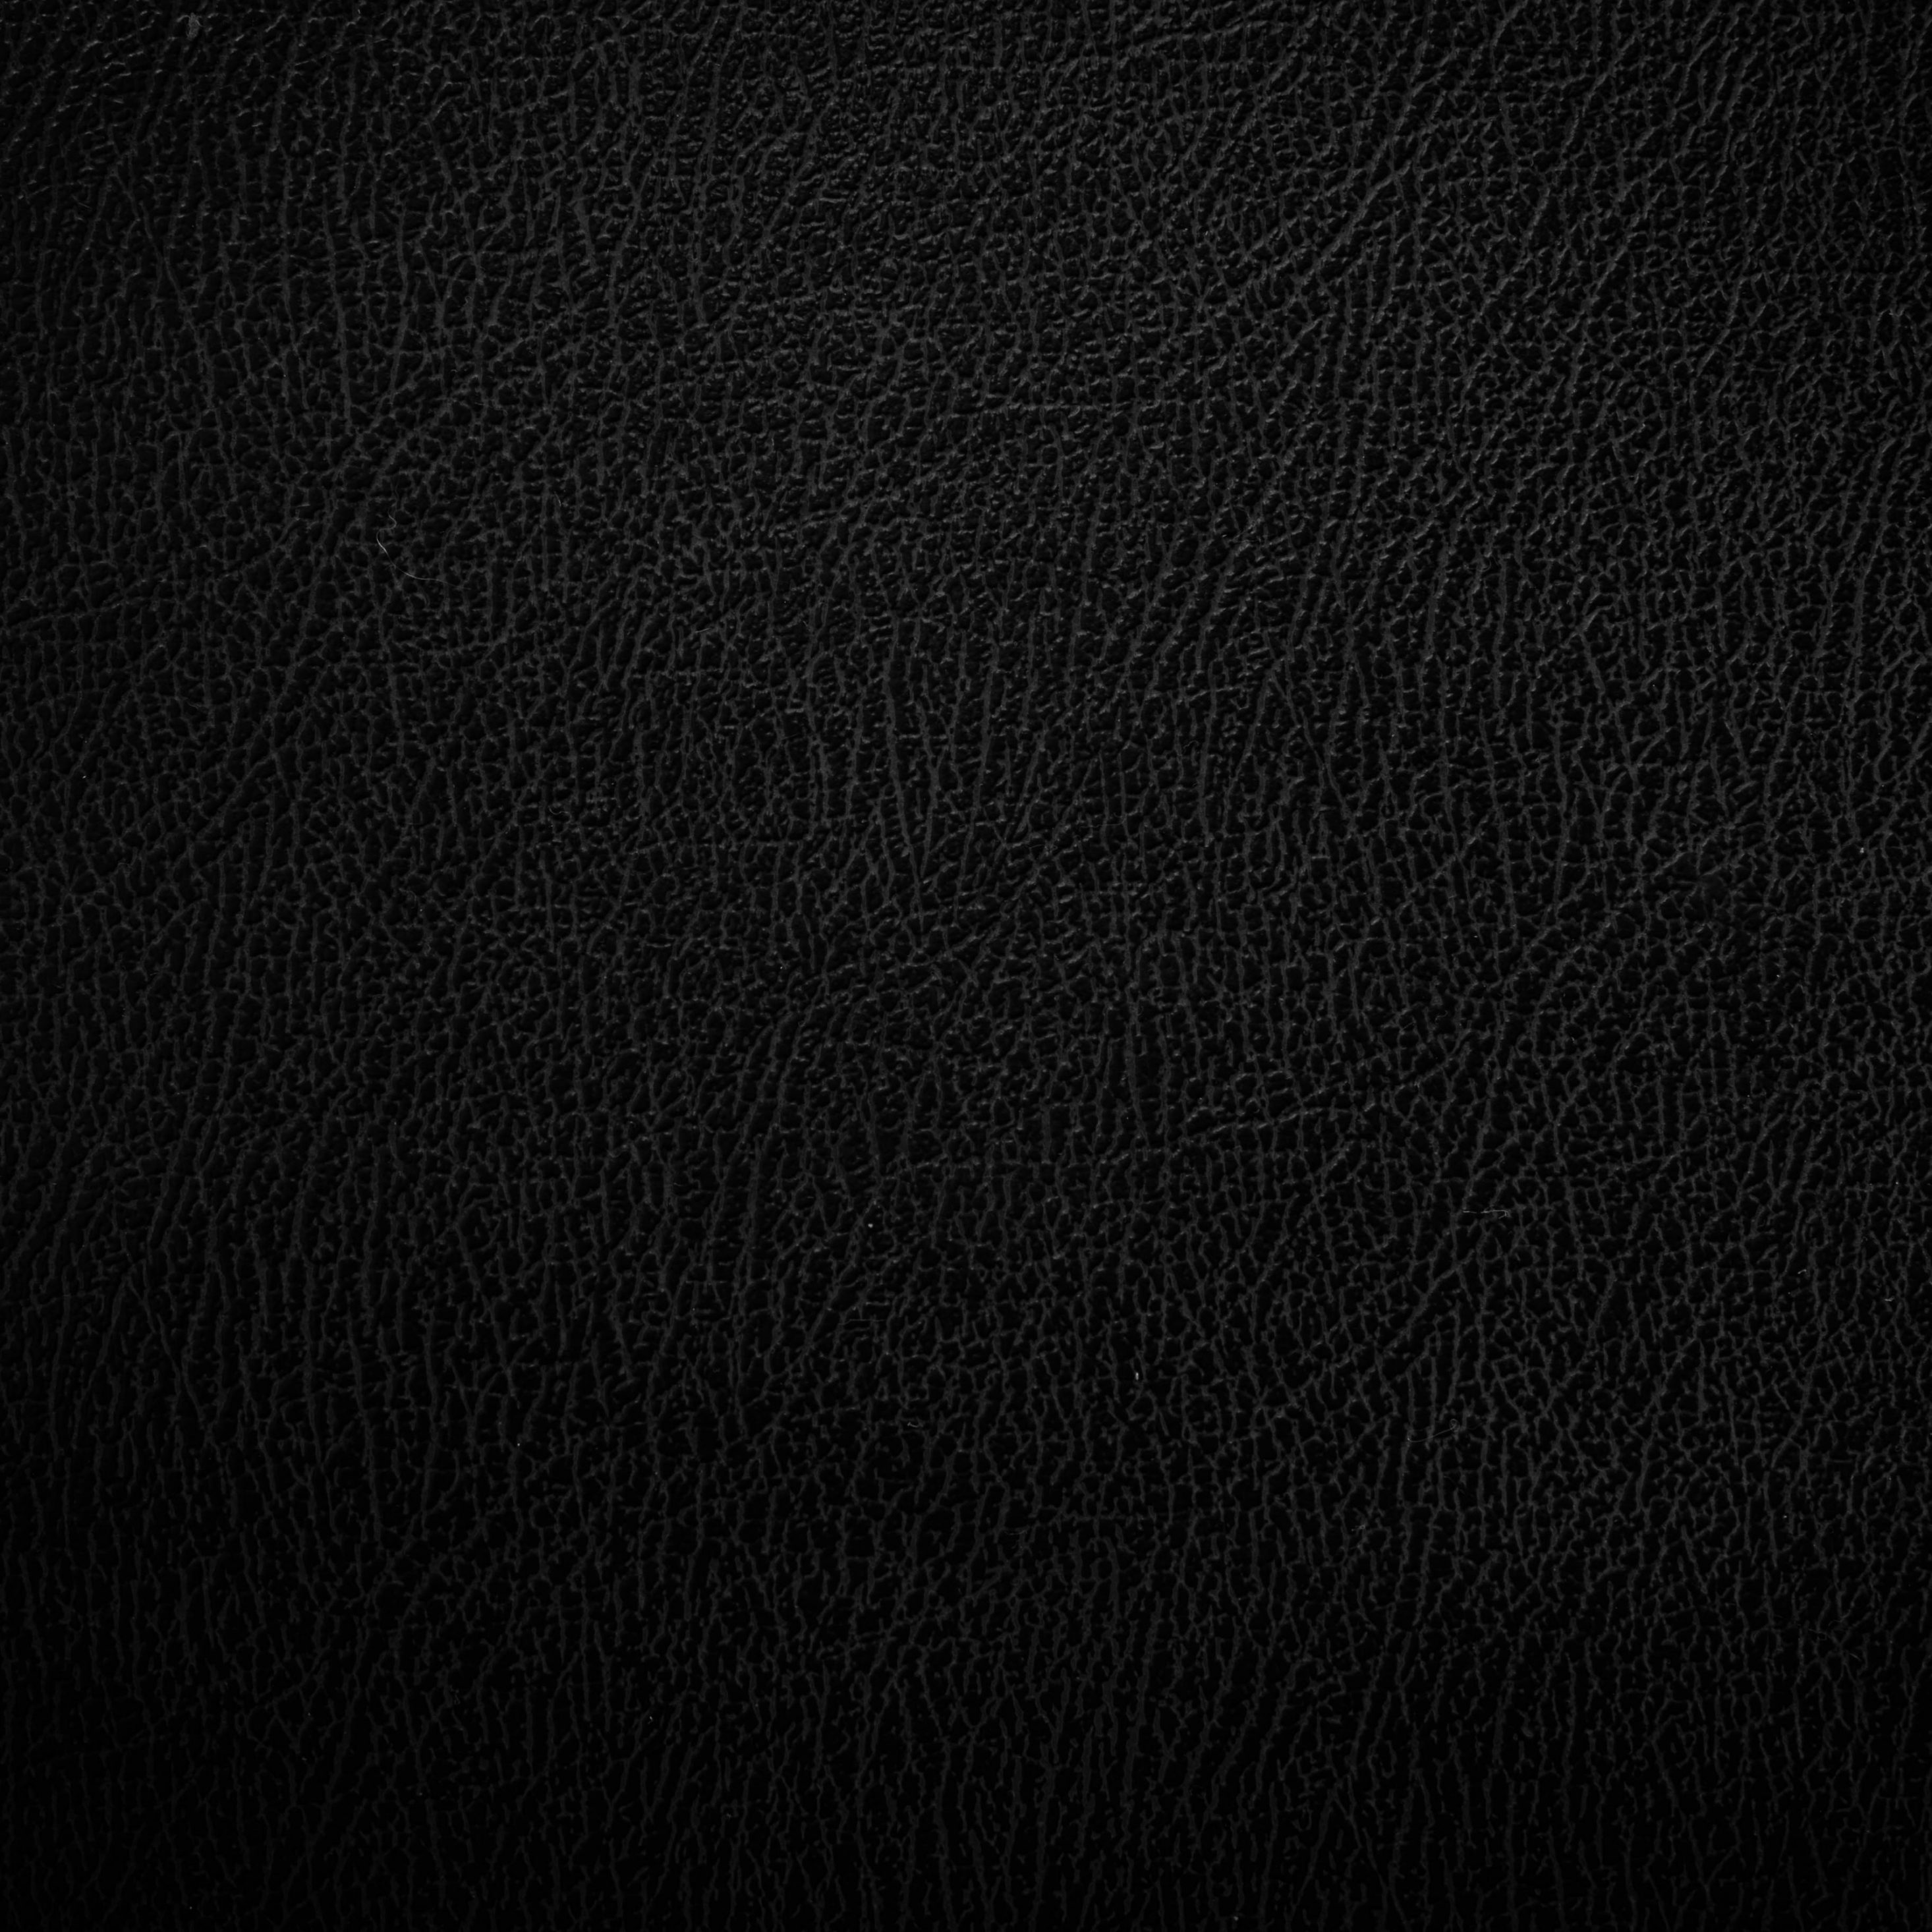 2932x2932 iPad Pro wallpaper 4k Black Leather Texture iPad Wallpaper 2932x2932 pixels resolution